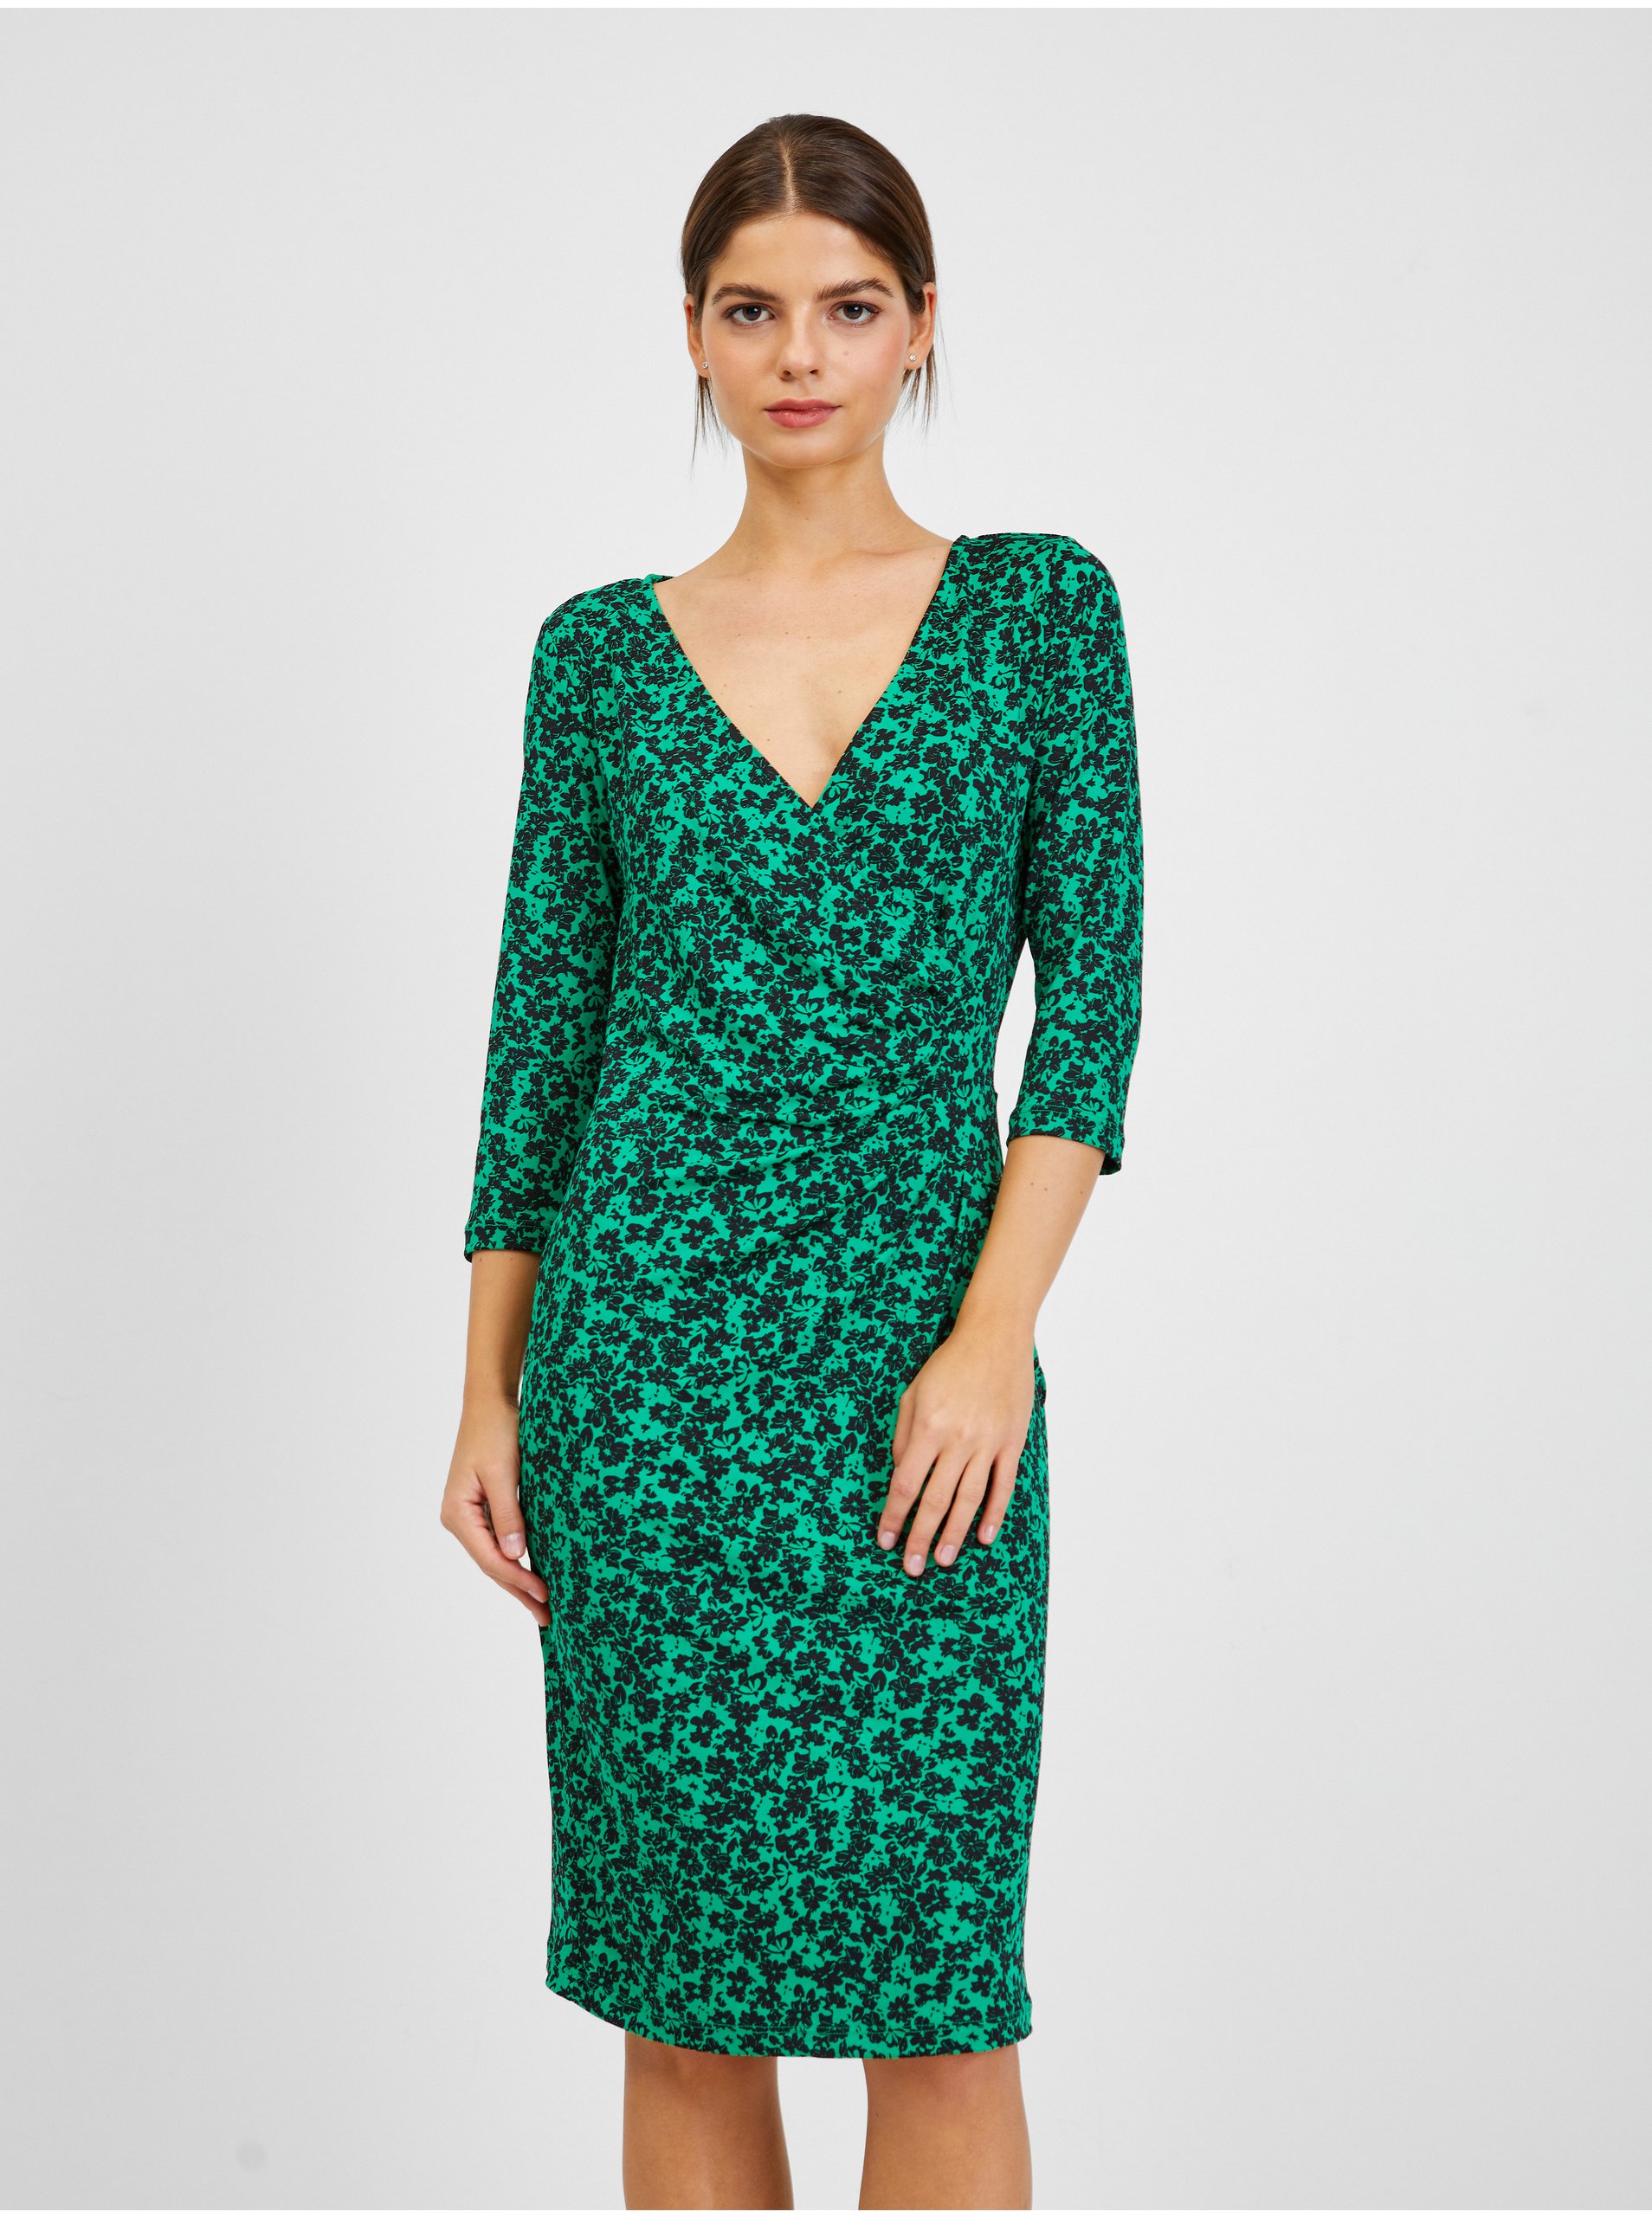 Lacno Spoločenské šaty pre ženy ORSAY - zelená, čierna